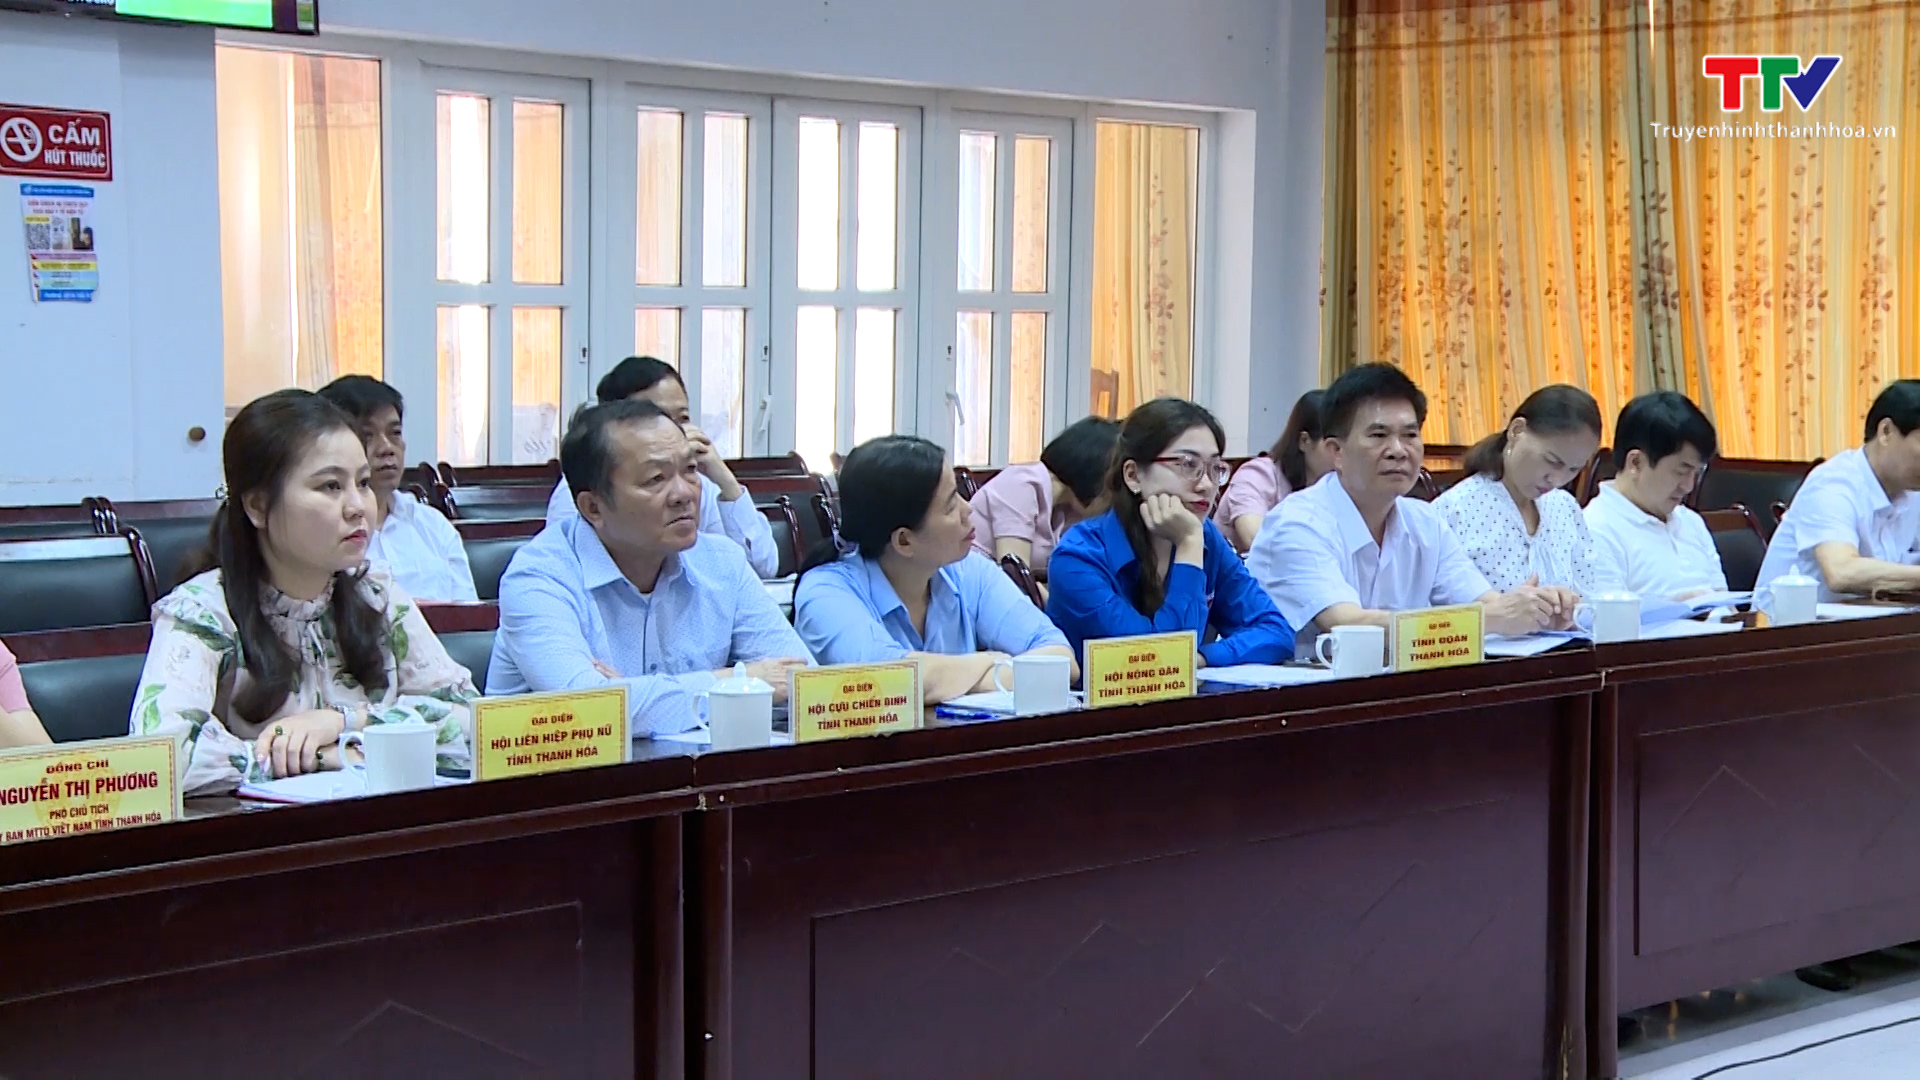 Phát động ủng hộ xây nhà đại đoàn kết cho hộ nghèo tỉnh Điện Biên - Ảnh 3.